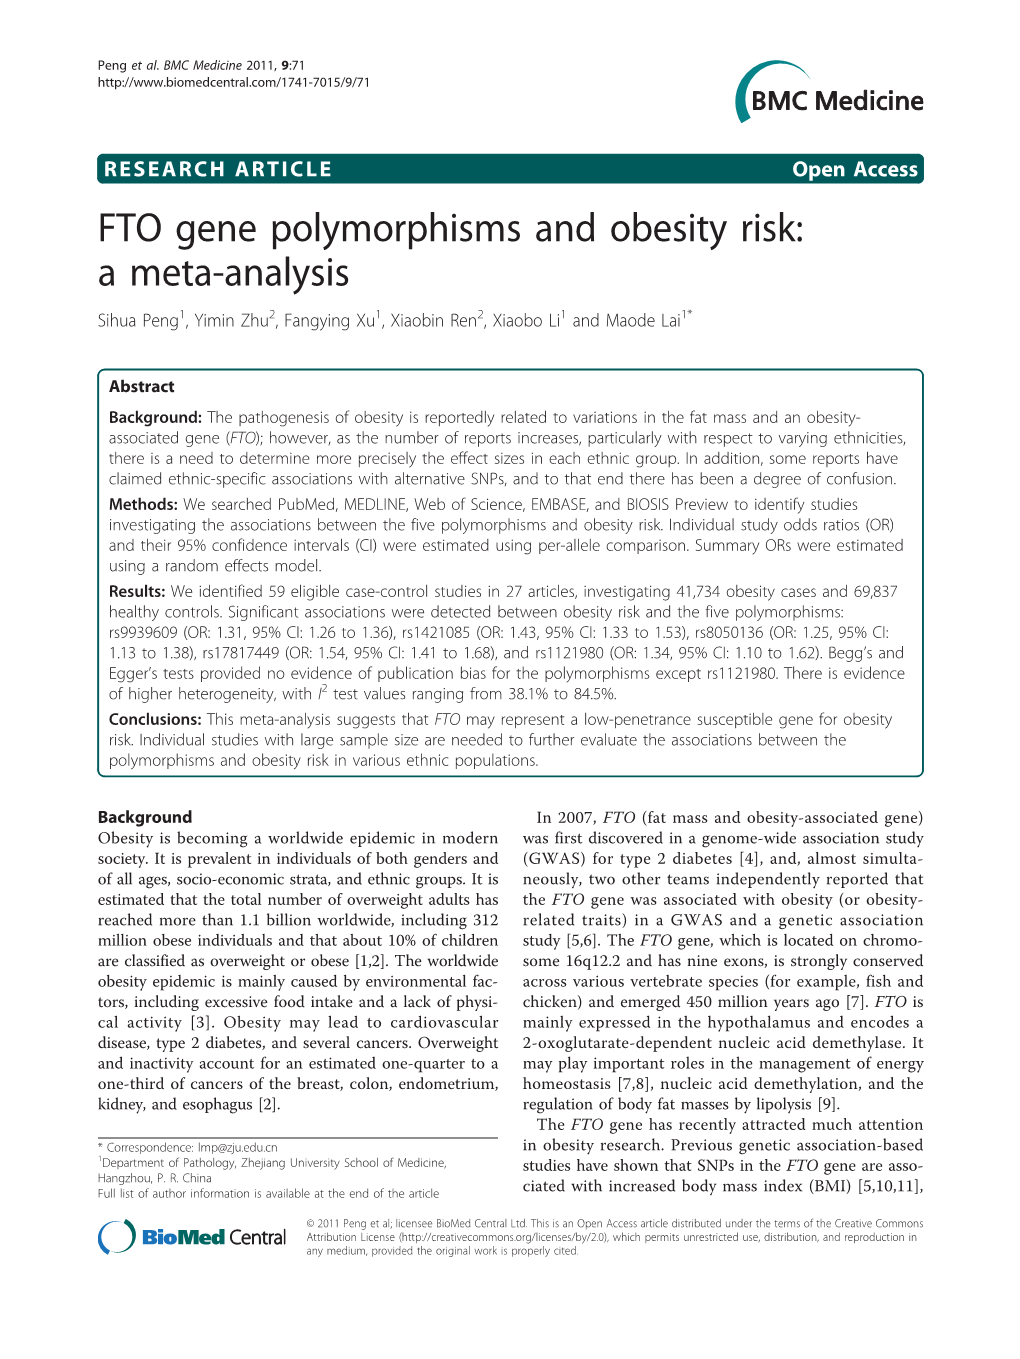 FTO Gene Polymorphisms and Obesity Risk: a Meta-Analysis Sihua Peng1, Yimin Zhu2, Fangying Xu1, Xiaobin Ren2, Xiaobo Li1 and Maode Lai1*